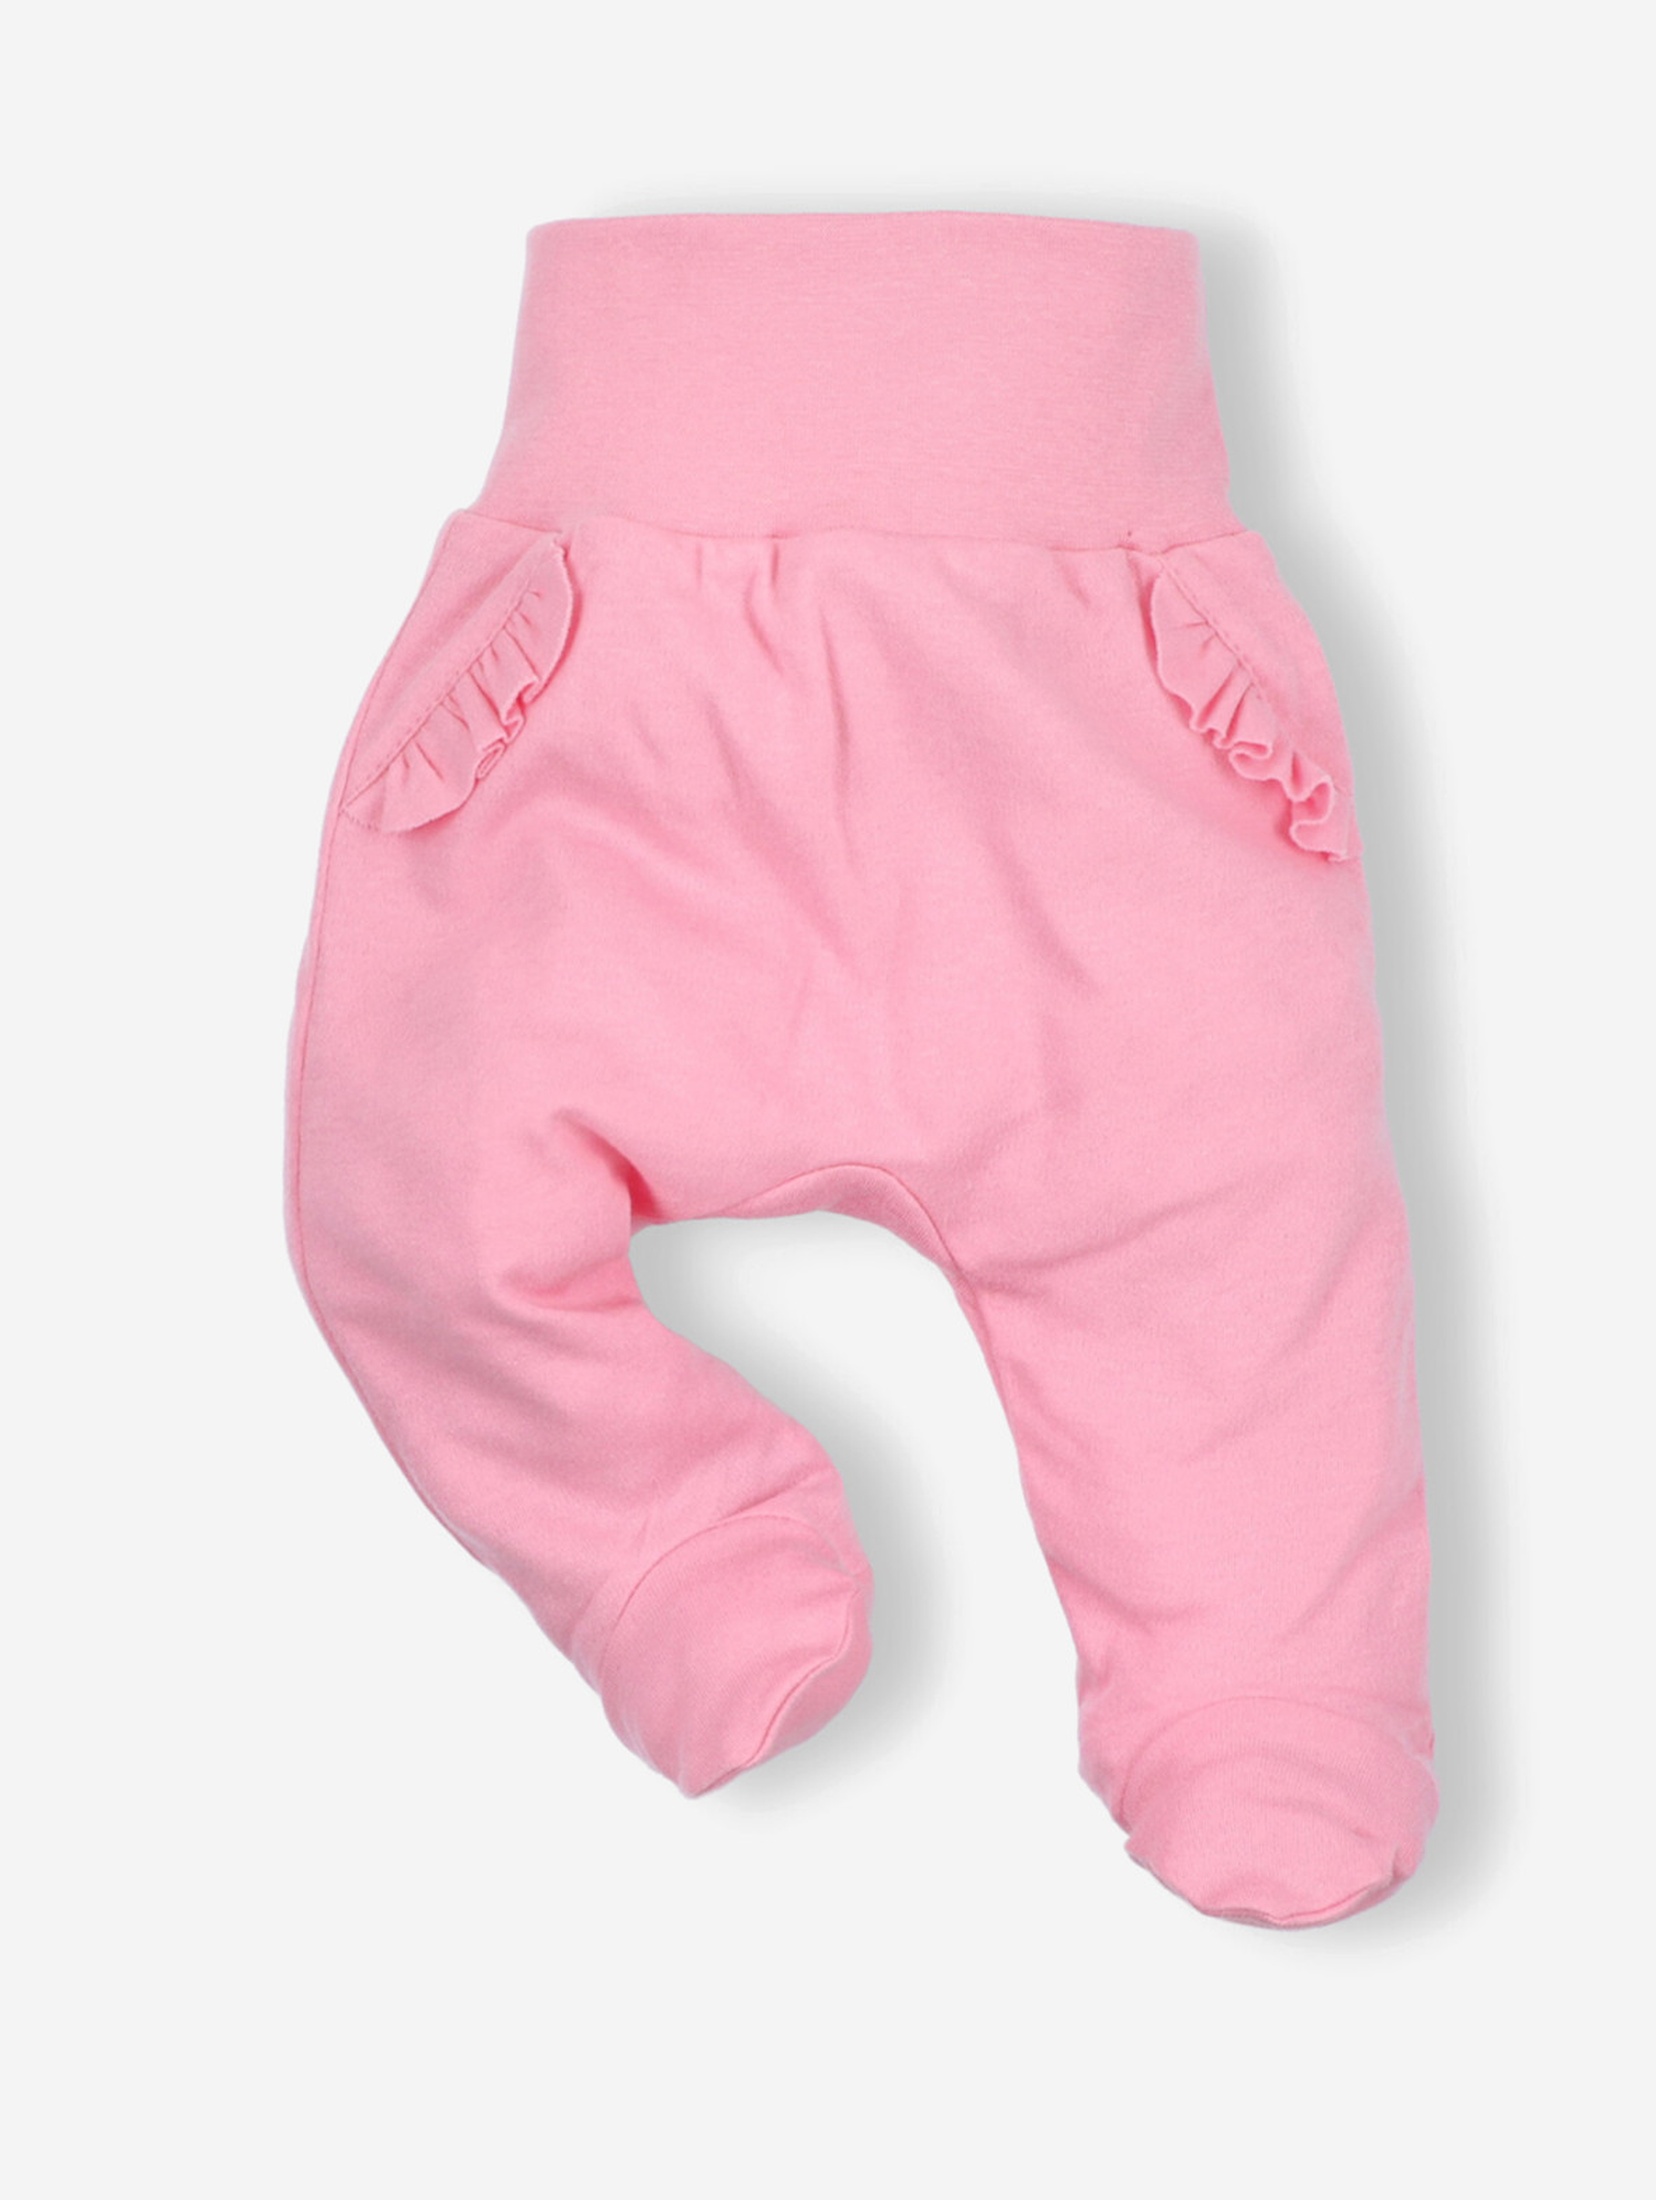 Półśpiochy niemowlęce z bawełny organicznej dla dziewczynki różowe